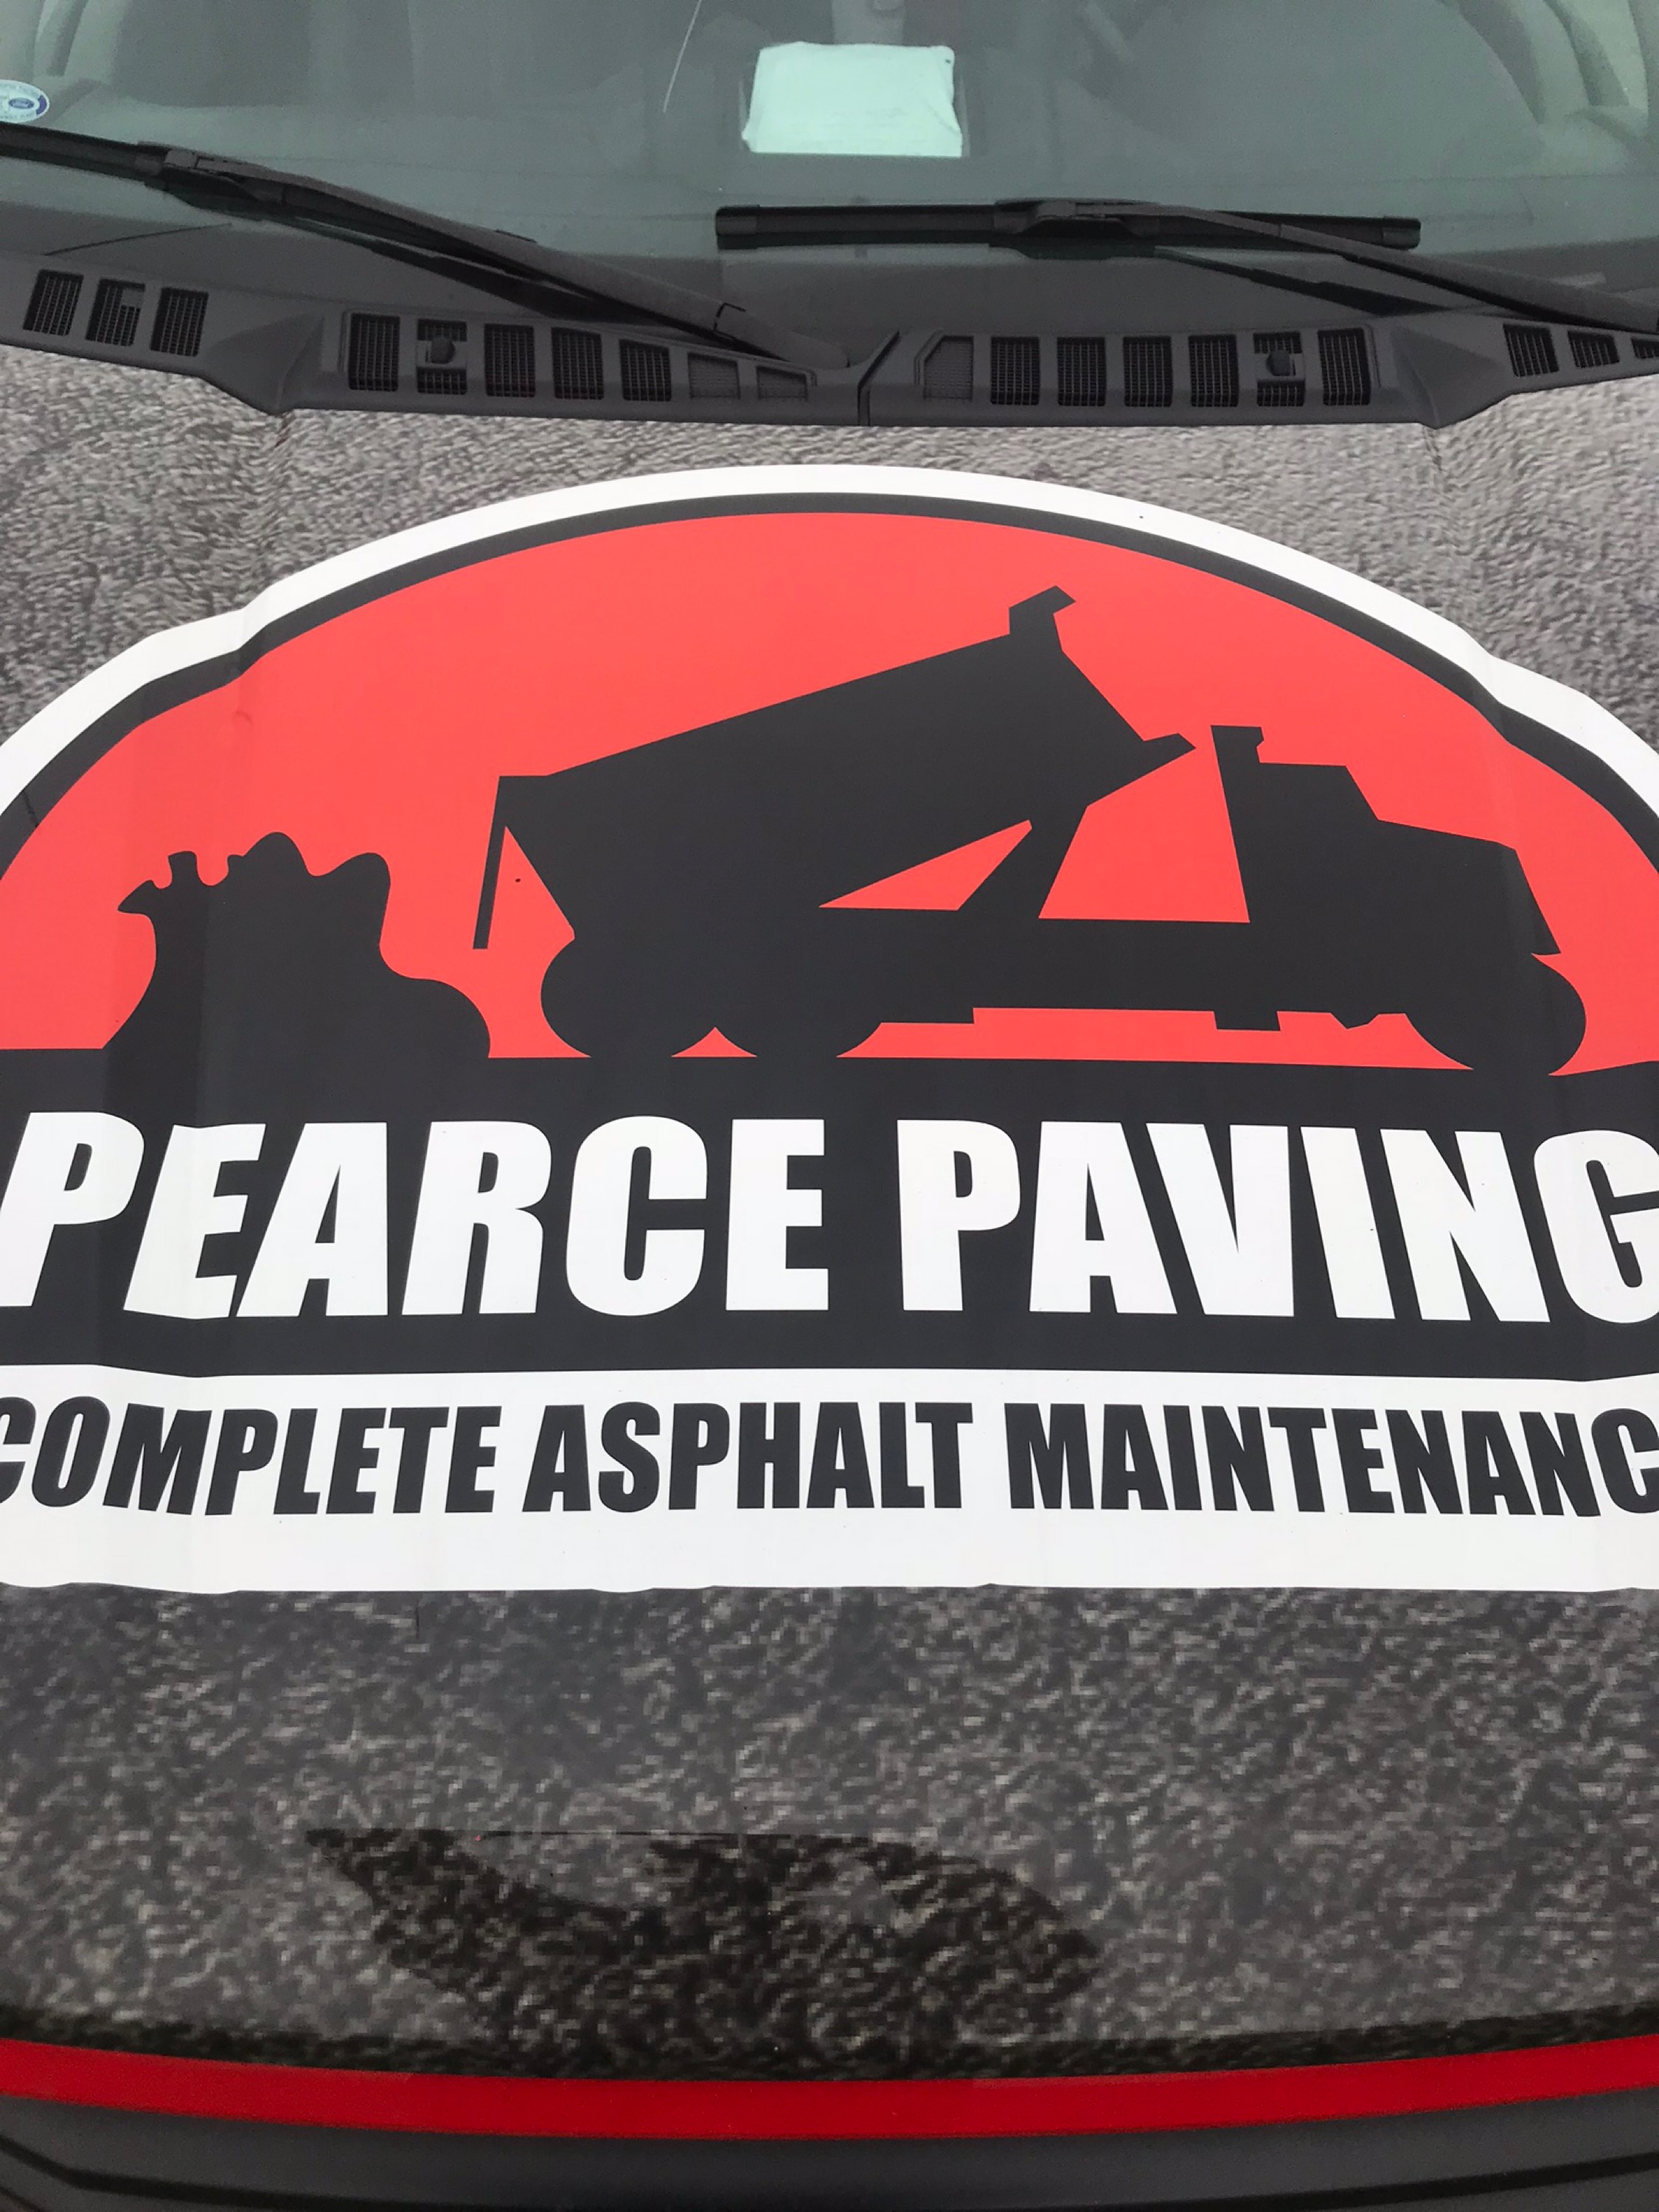 Pearce Paving Logo